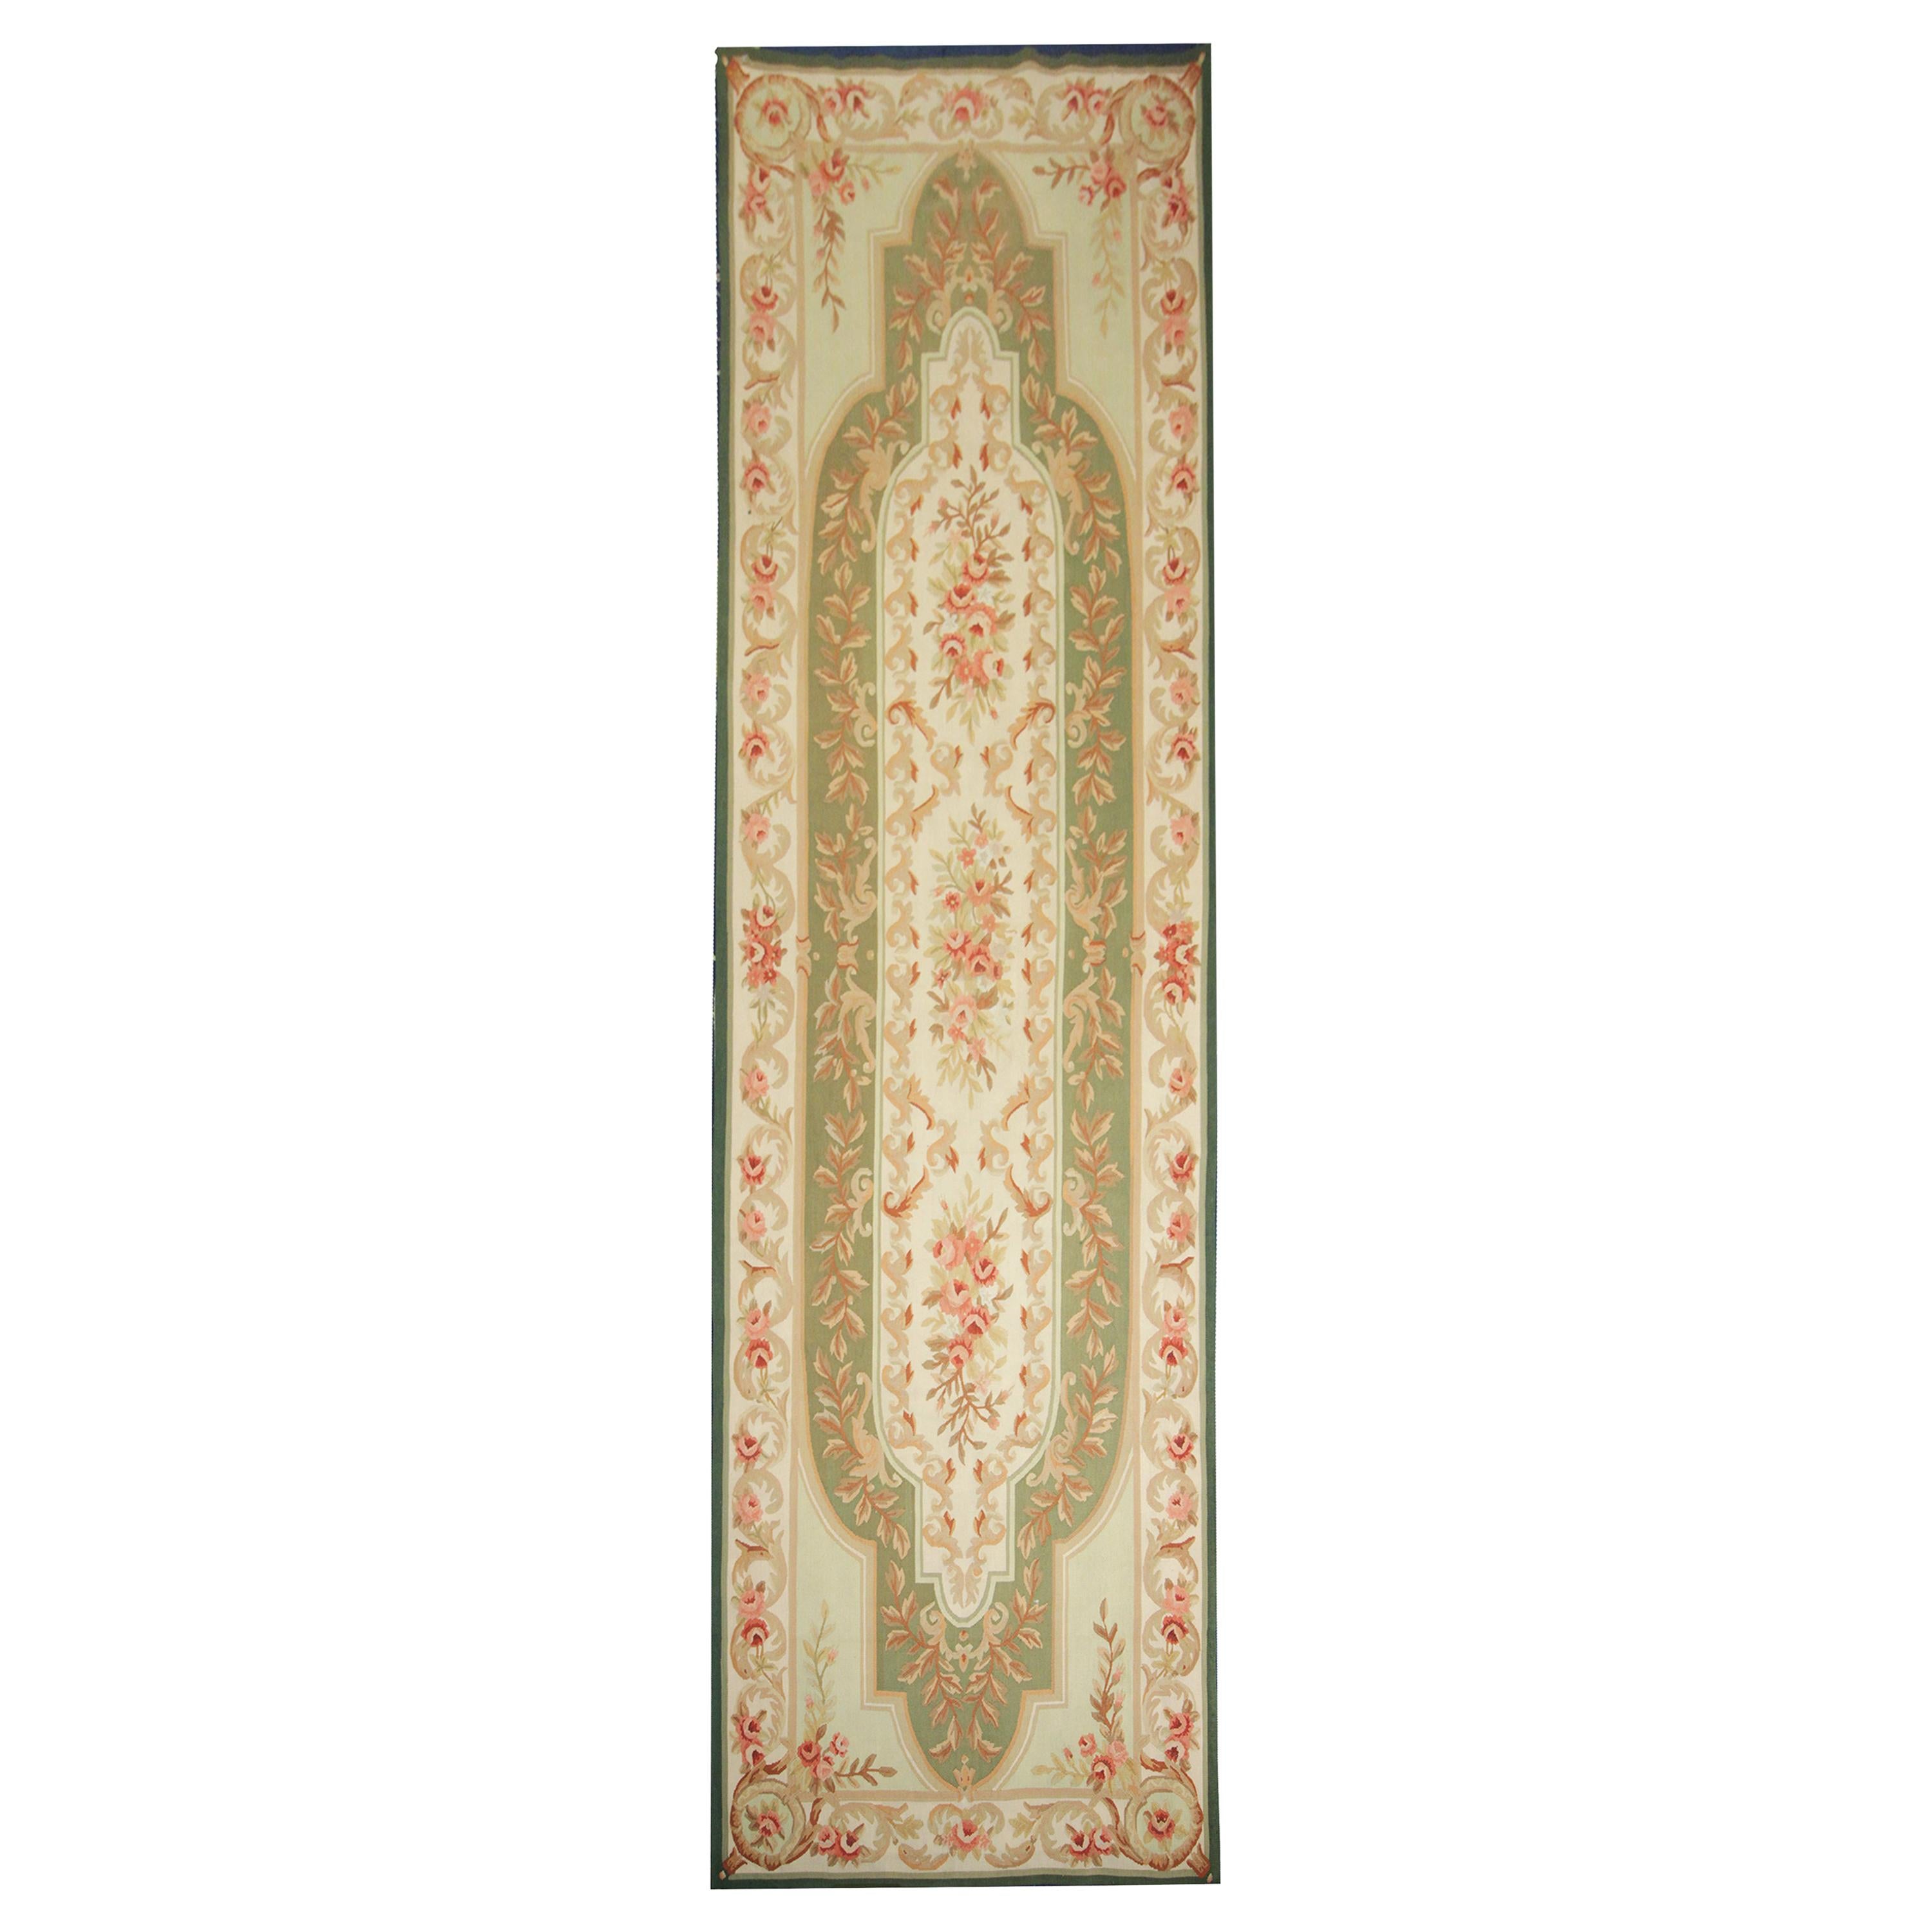 Tapis d'Aubusson, tapisserie orientale de laine verte faite à la main